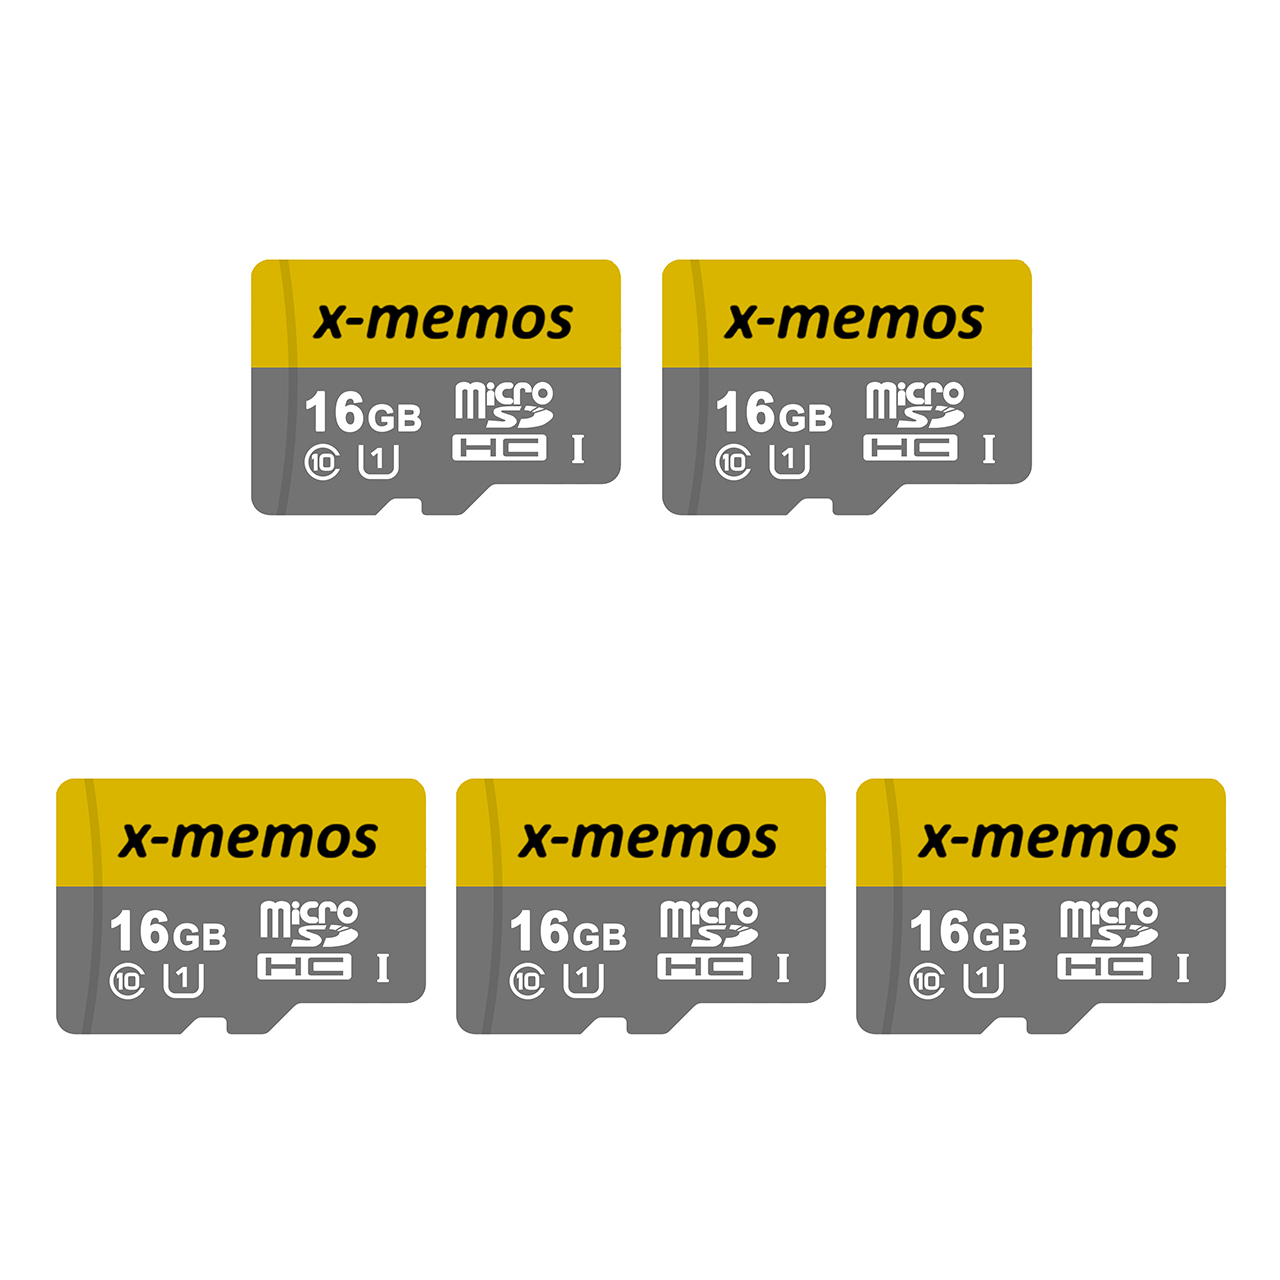 کارت حافظه microSDHC ایکس-مموس کلاس 10 استاندارد UHS-I U1 سرعت 30MBps ظرفیت 16 گیگابایت بسته 5 عددی